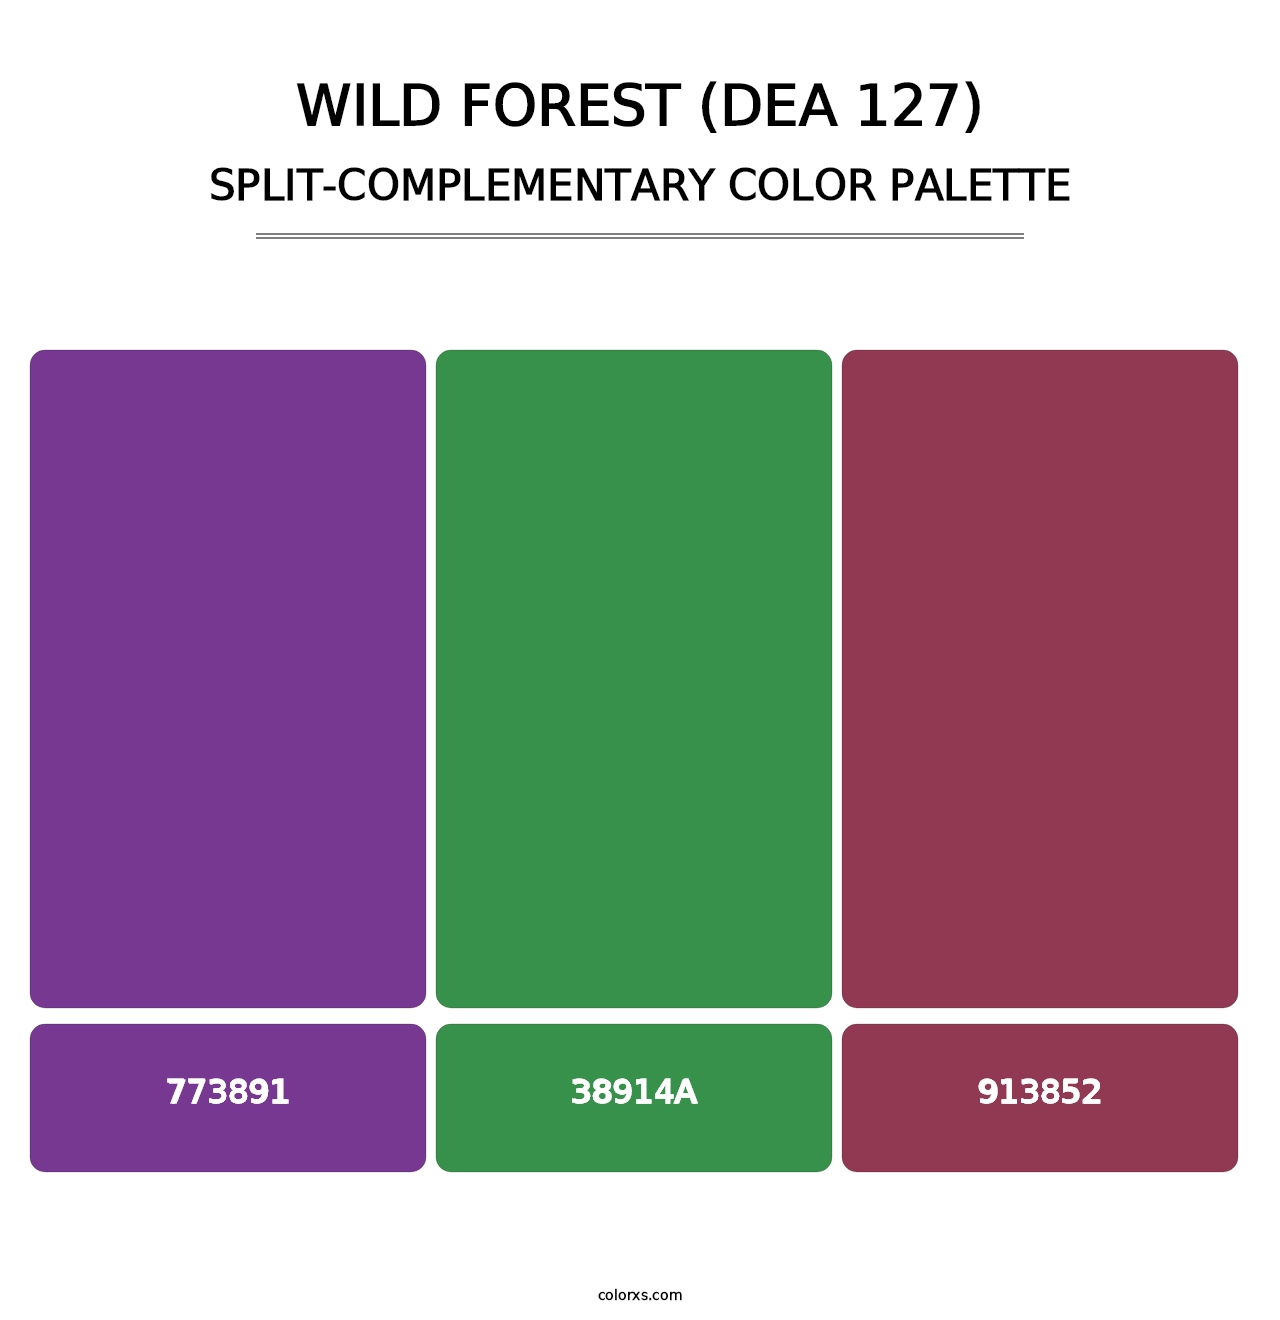 Wild Forest (DEA 127) - Split-Complementary Color Palette